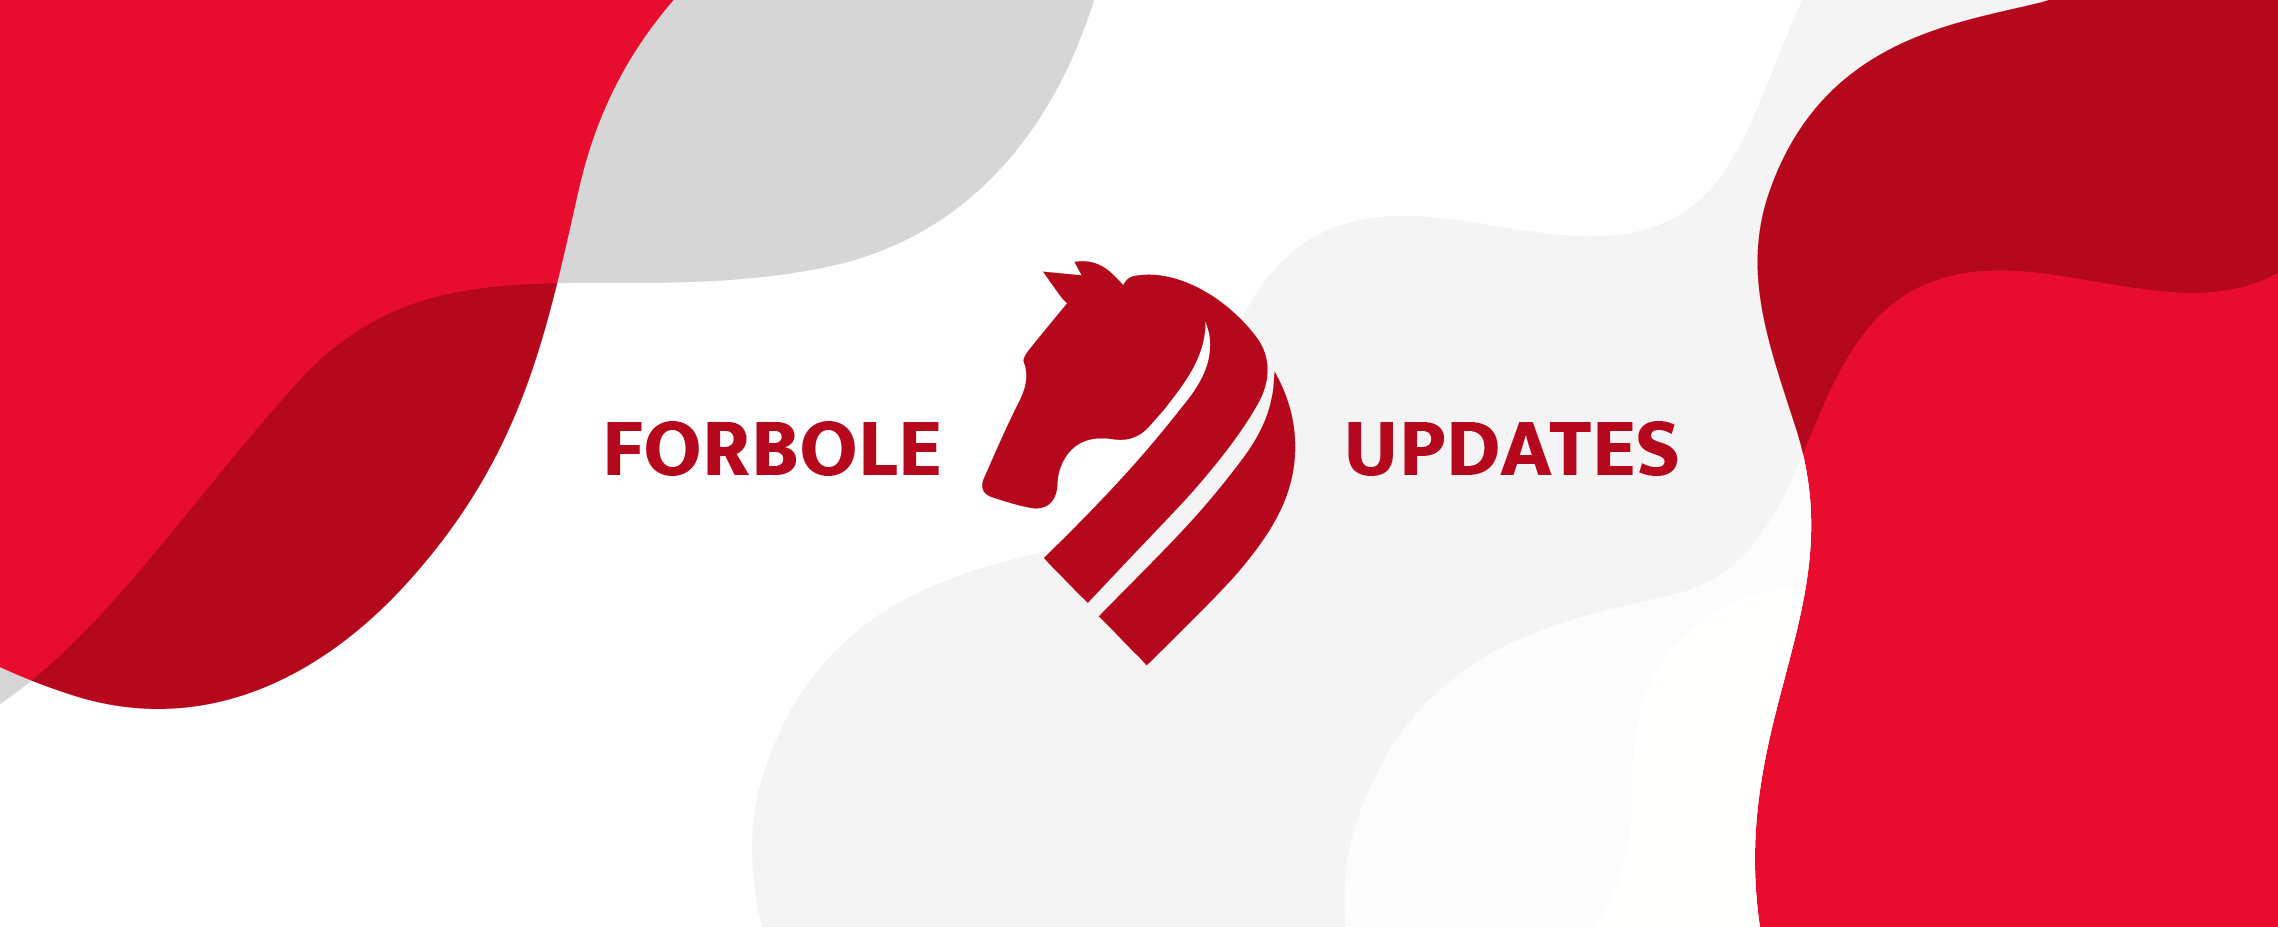 Forbole Updates (Dec 2020)